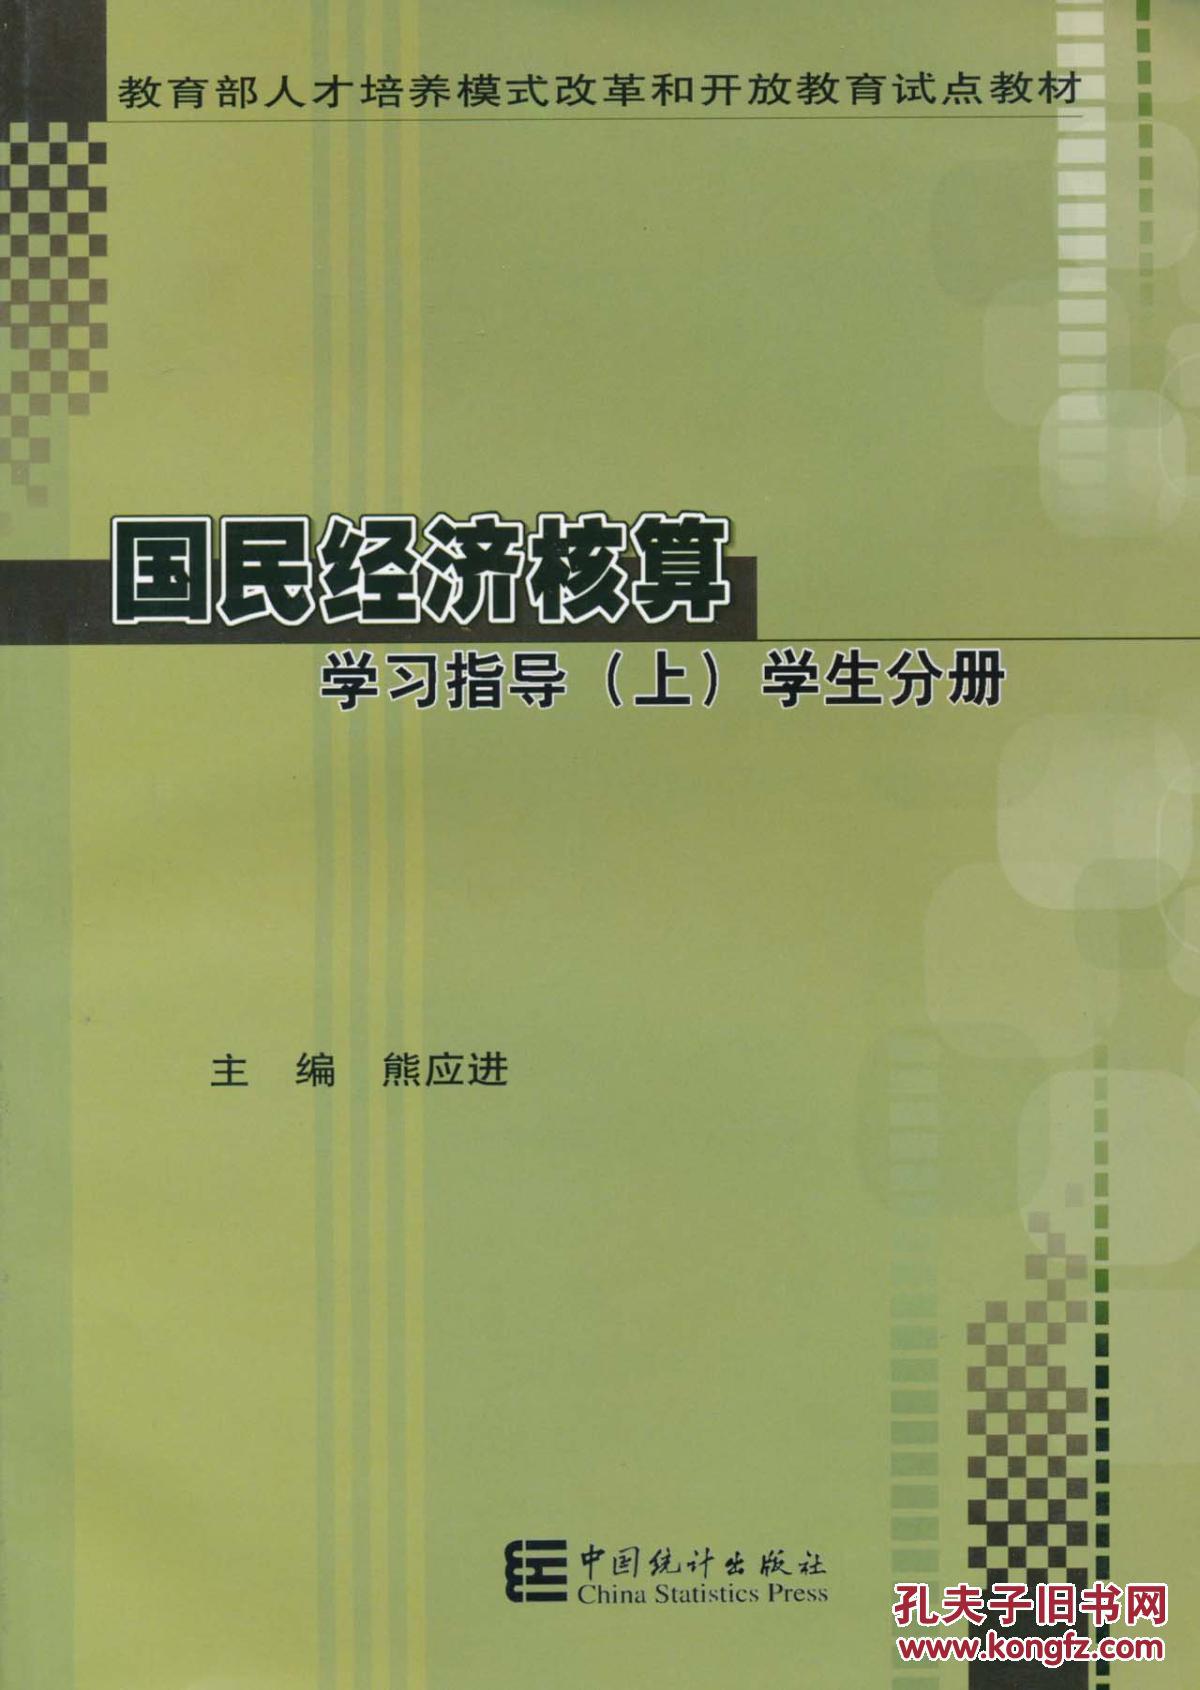 【图】正版新书jz~国民经济核算学习指导(上)学